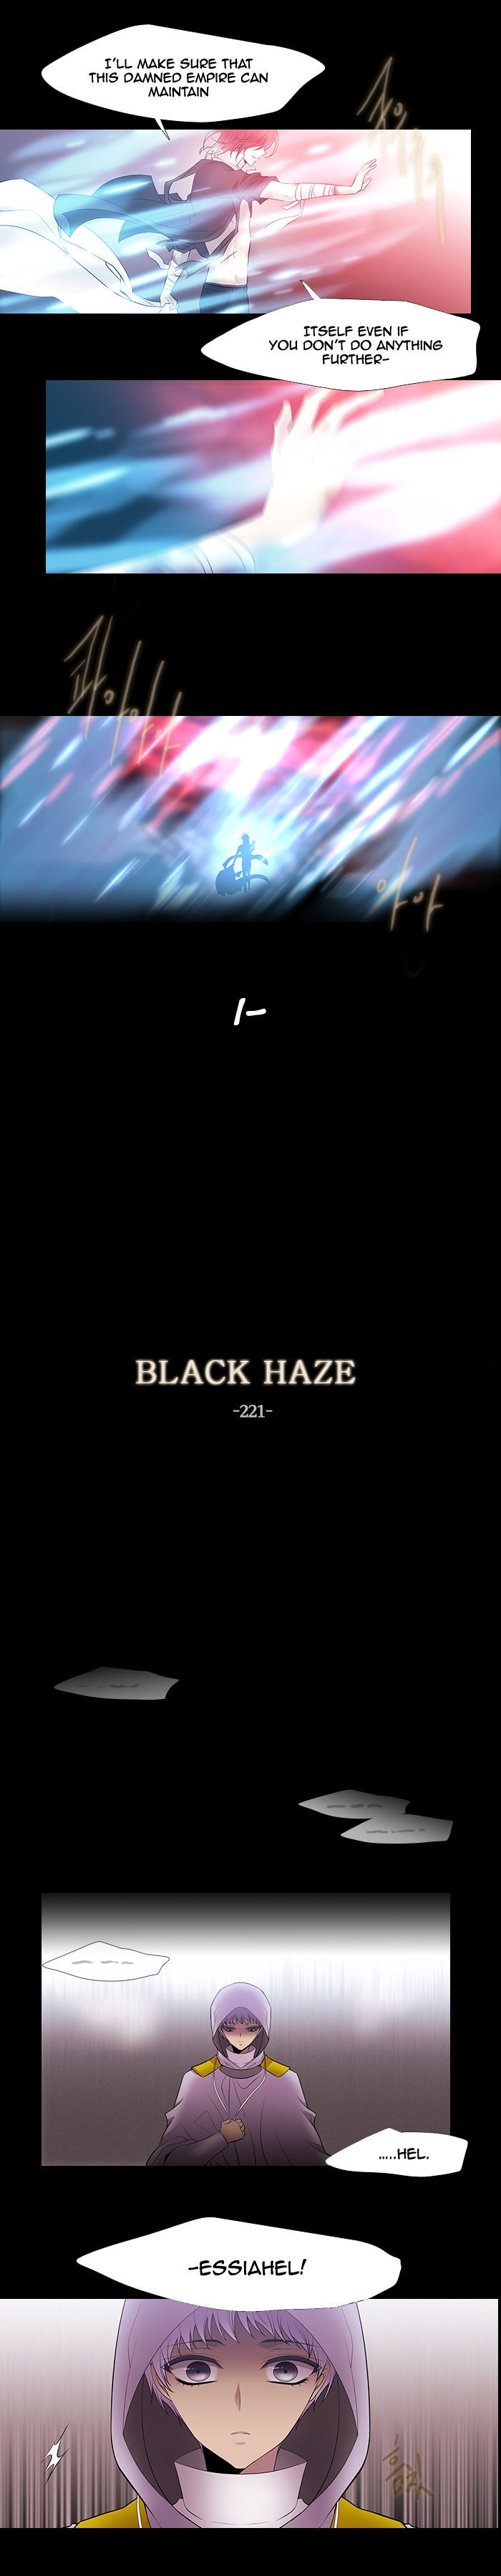 Black Haze 221